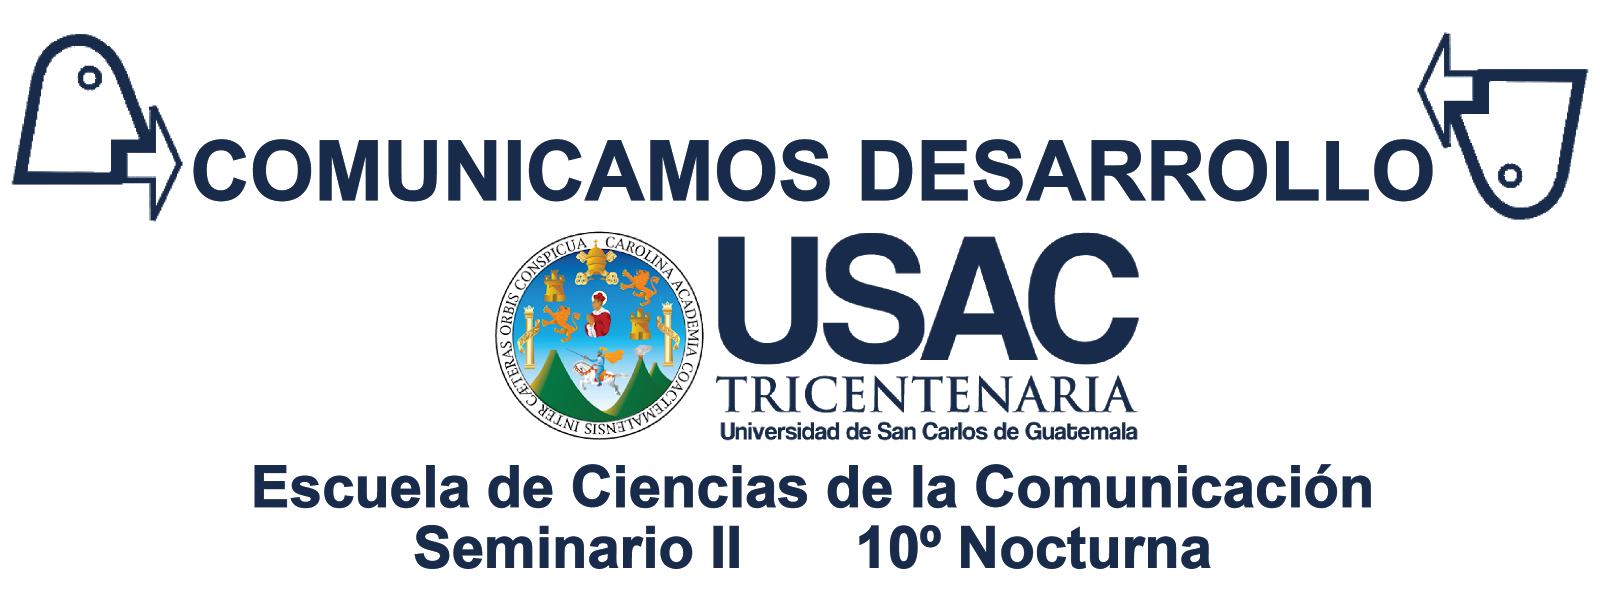 Comunicamos Desarrollo en Sumpango, Sacatepéquez 